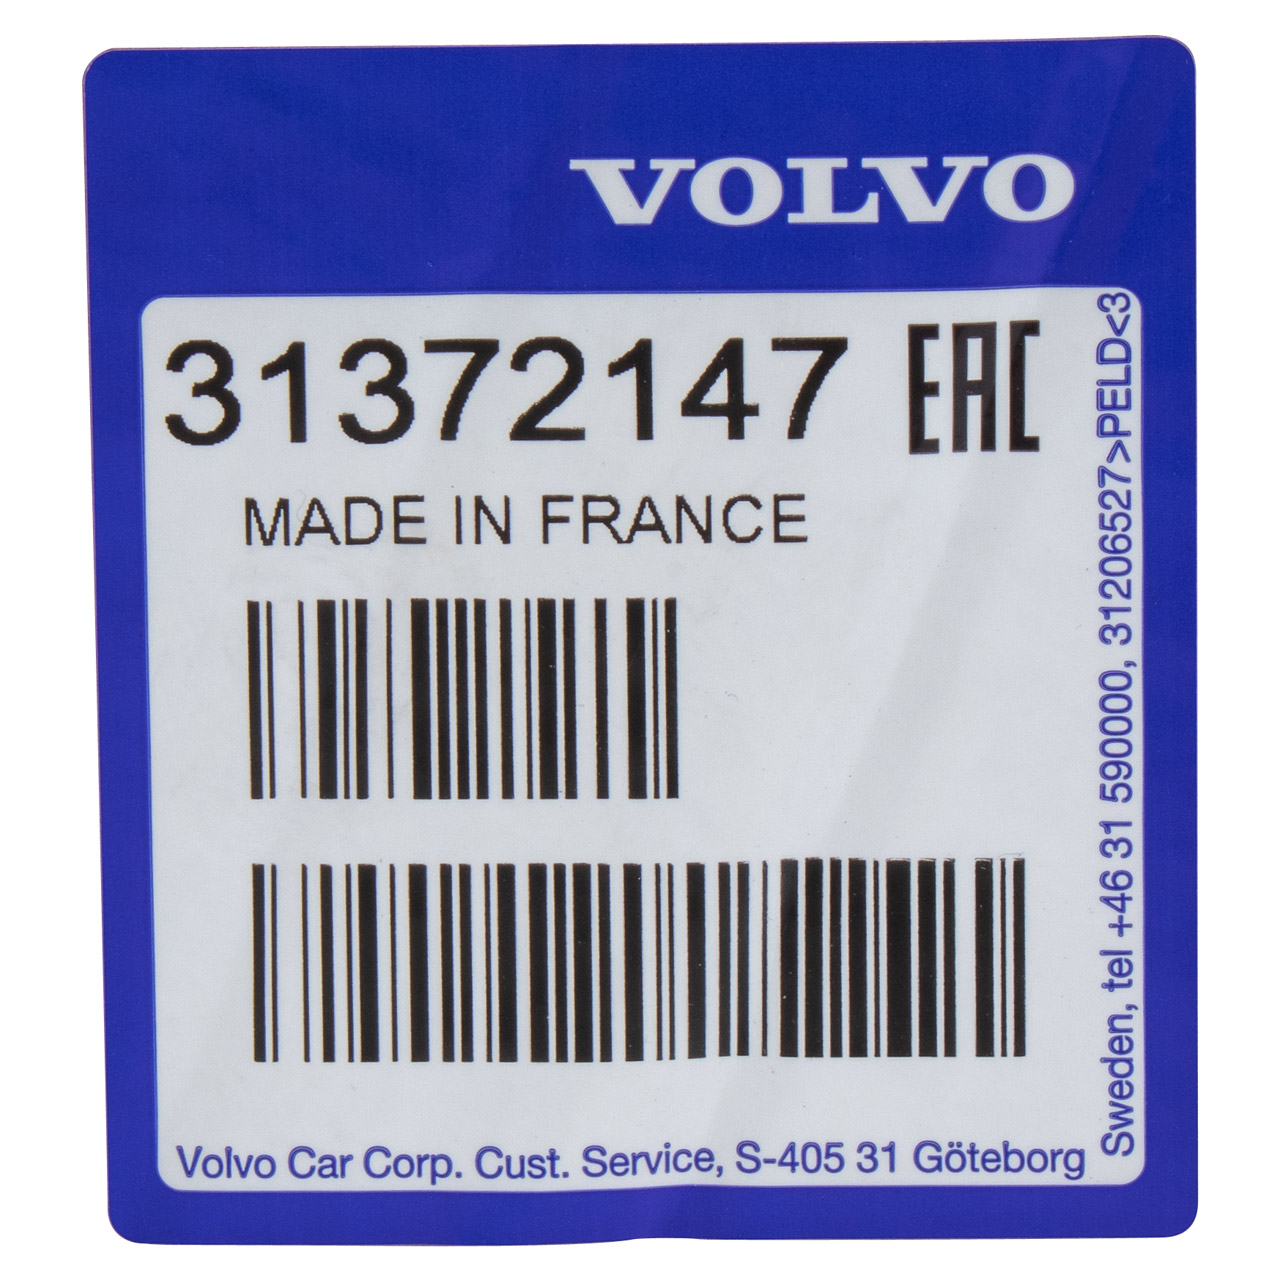 ORIGINAL Volvo Abgasanlage Auspuff ab KAT 240 260 2.0-2.8 31372147